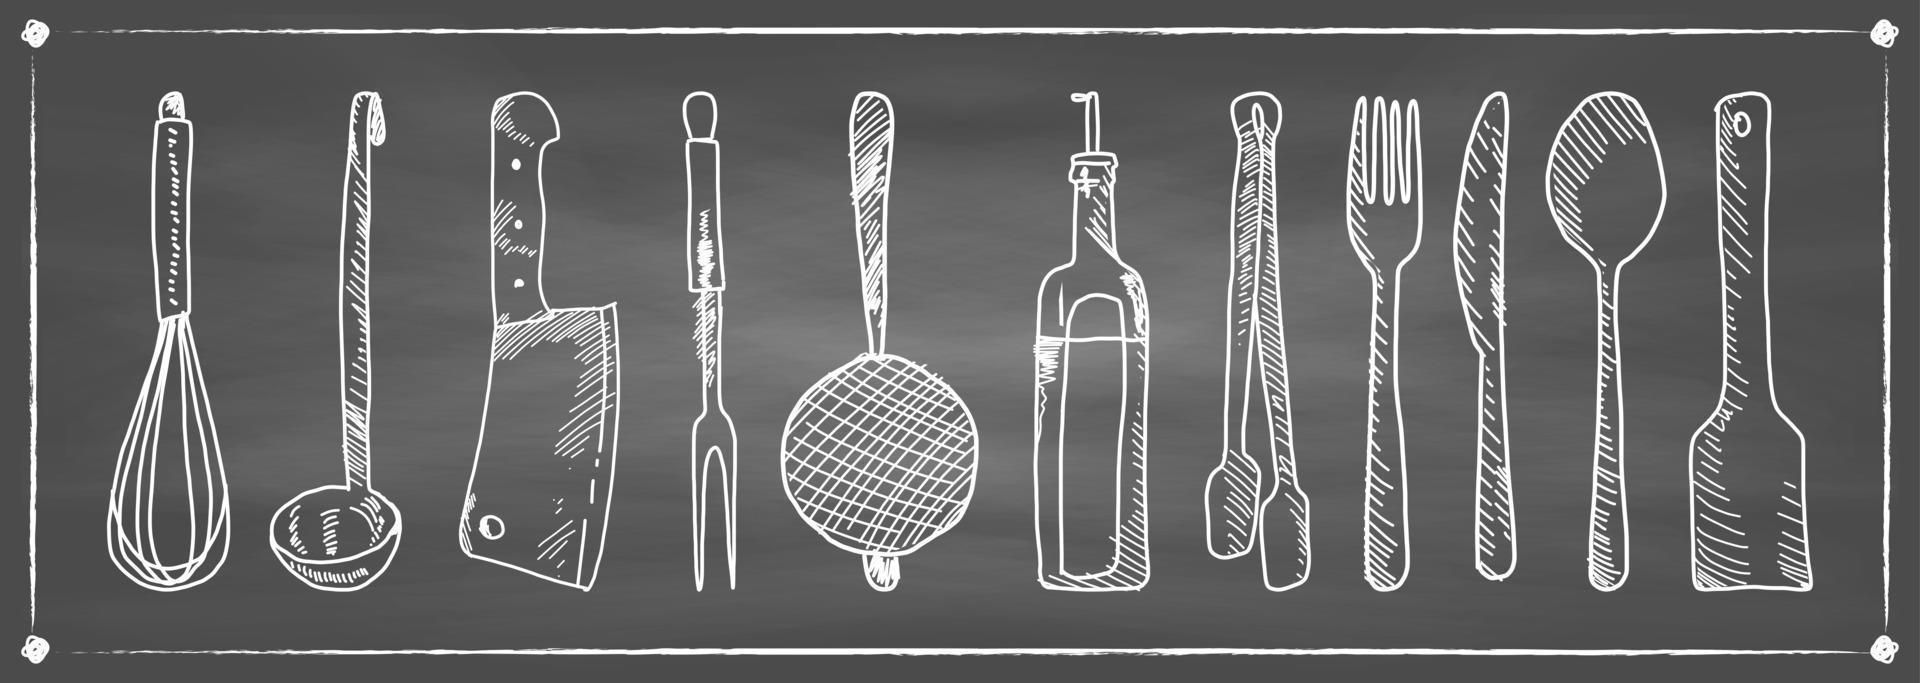 dibujado a mano conjunto de utensilios de cocina en una pizarra. vector